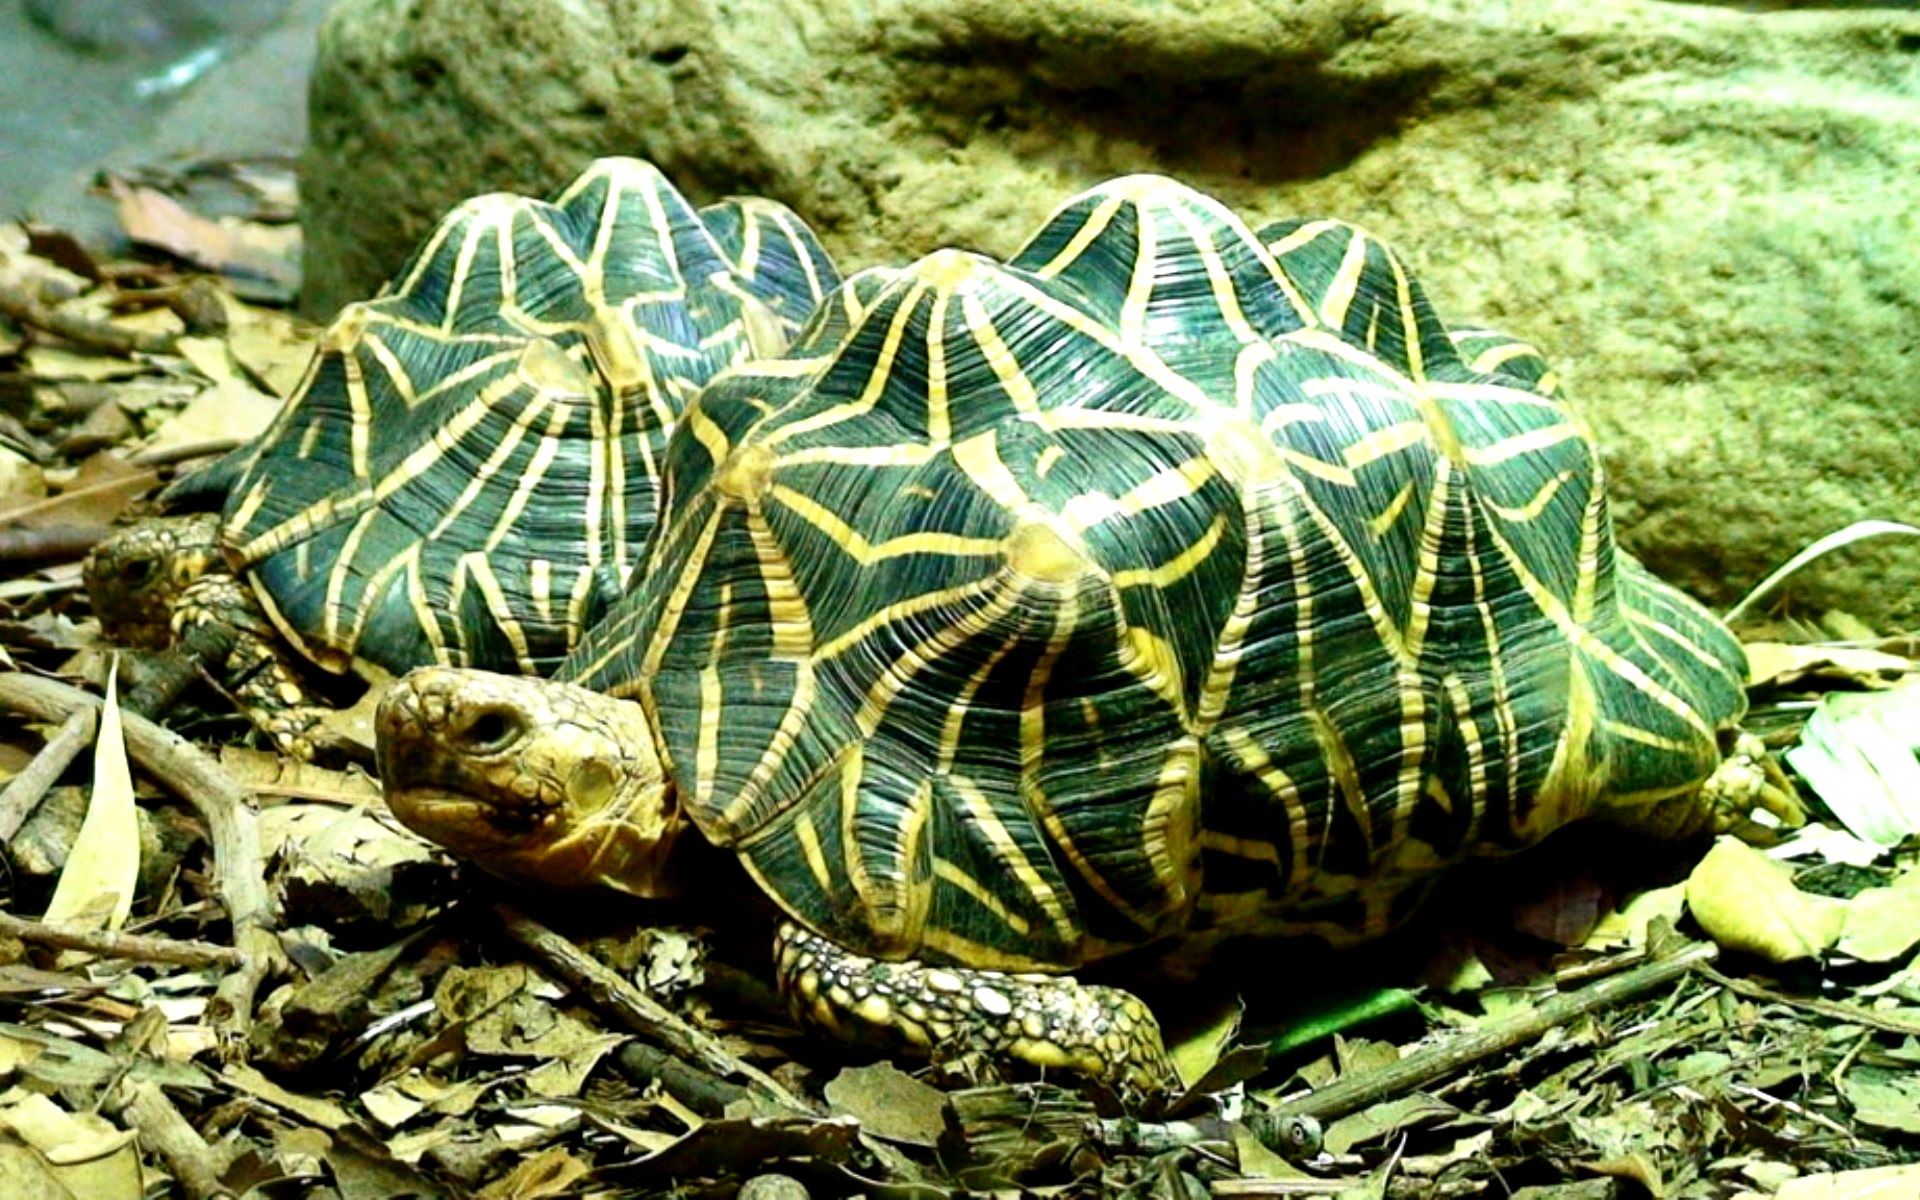 Посмотрим черепахи. Звездчатая сухопутная черепаха. Индийская звездчатая черепаха. Geochelone elegans. Черепахи породы звездчатая.